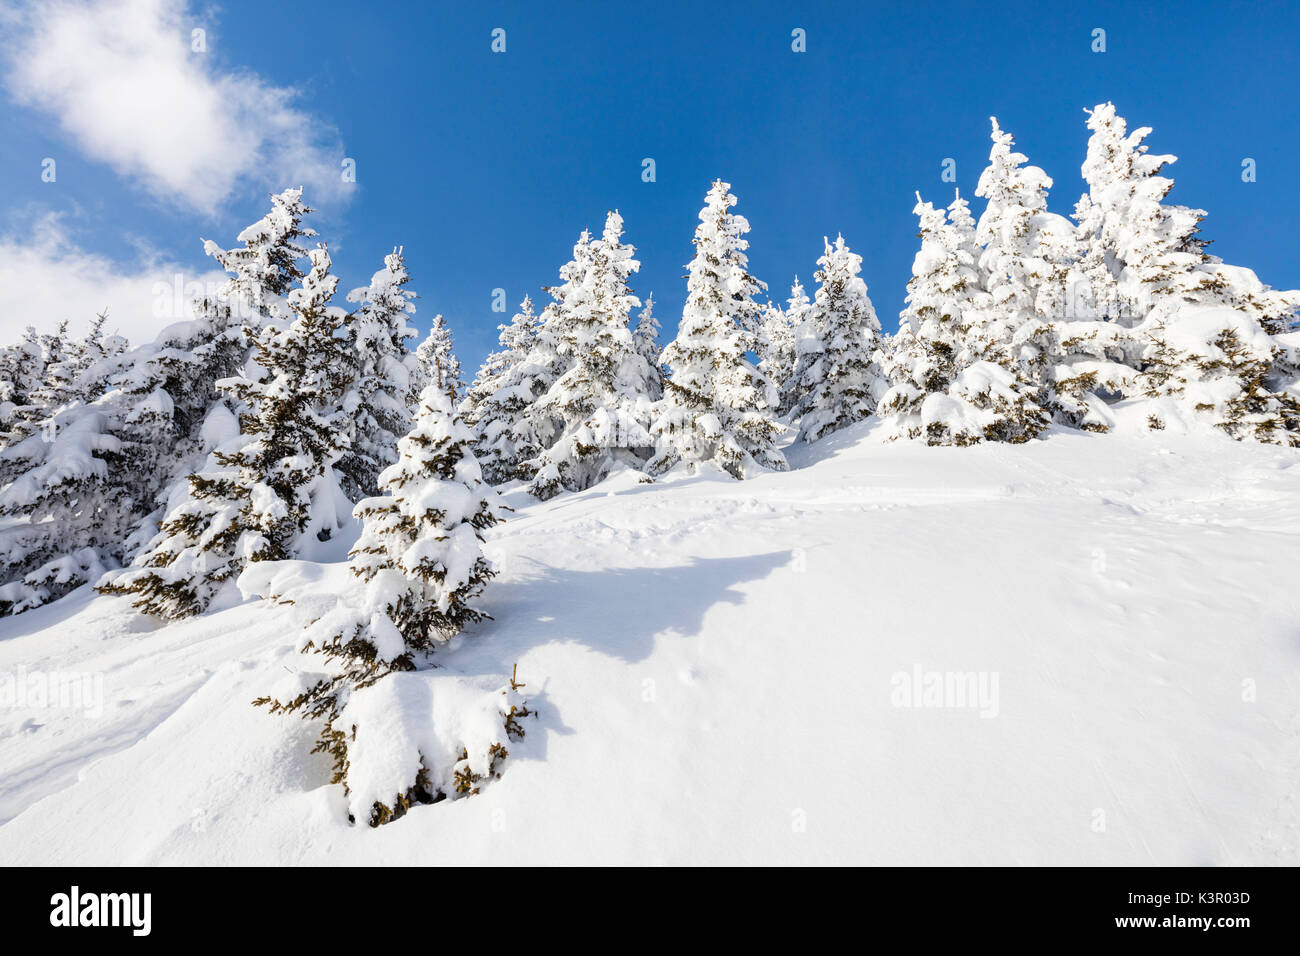 Blue Sky fotogramas del bosque cubierto de nieve en un soleado día de invierno Raron Bettmeralp distrito del cantón de Valais Suiza Europa Foto de stock